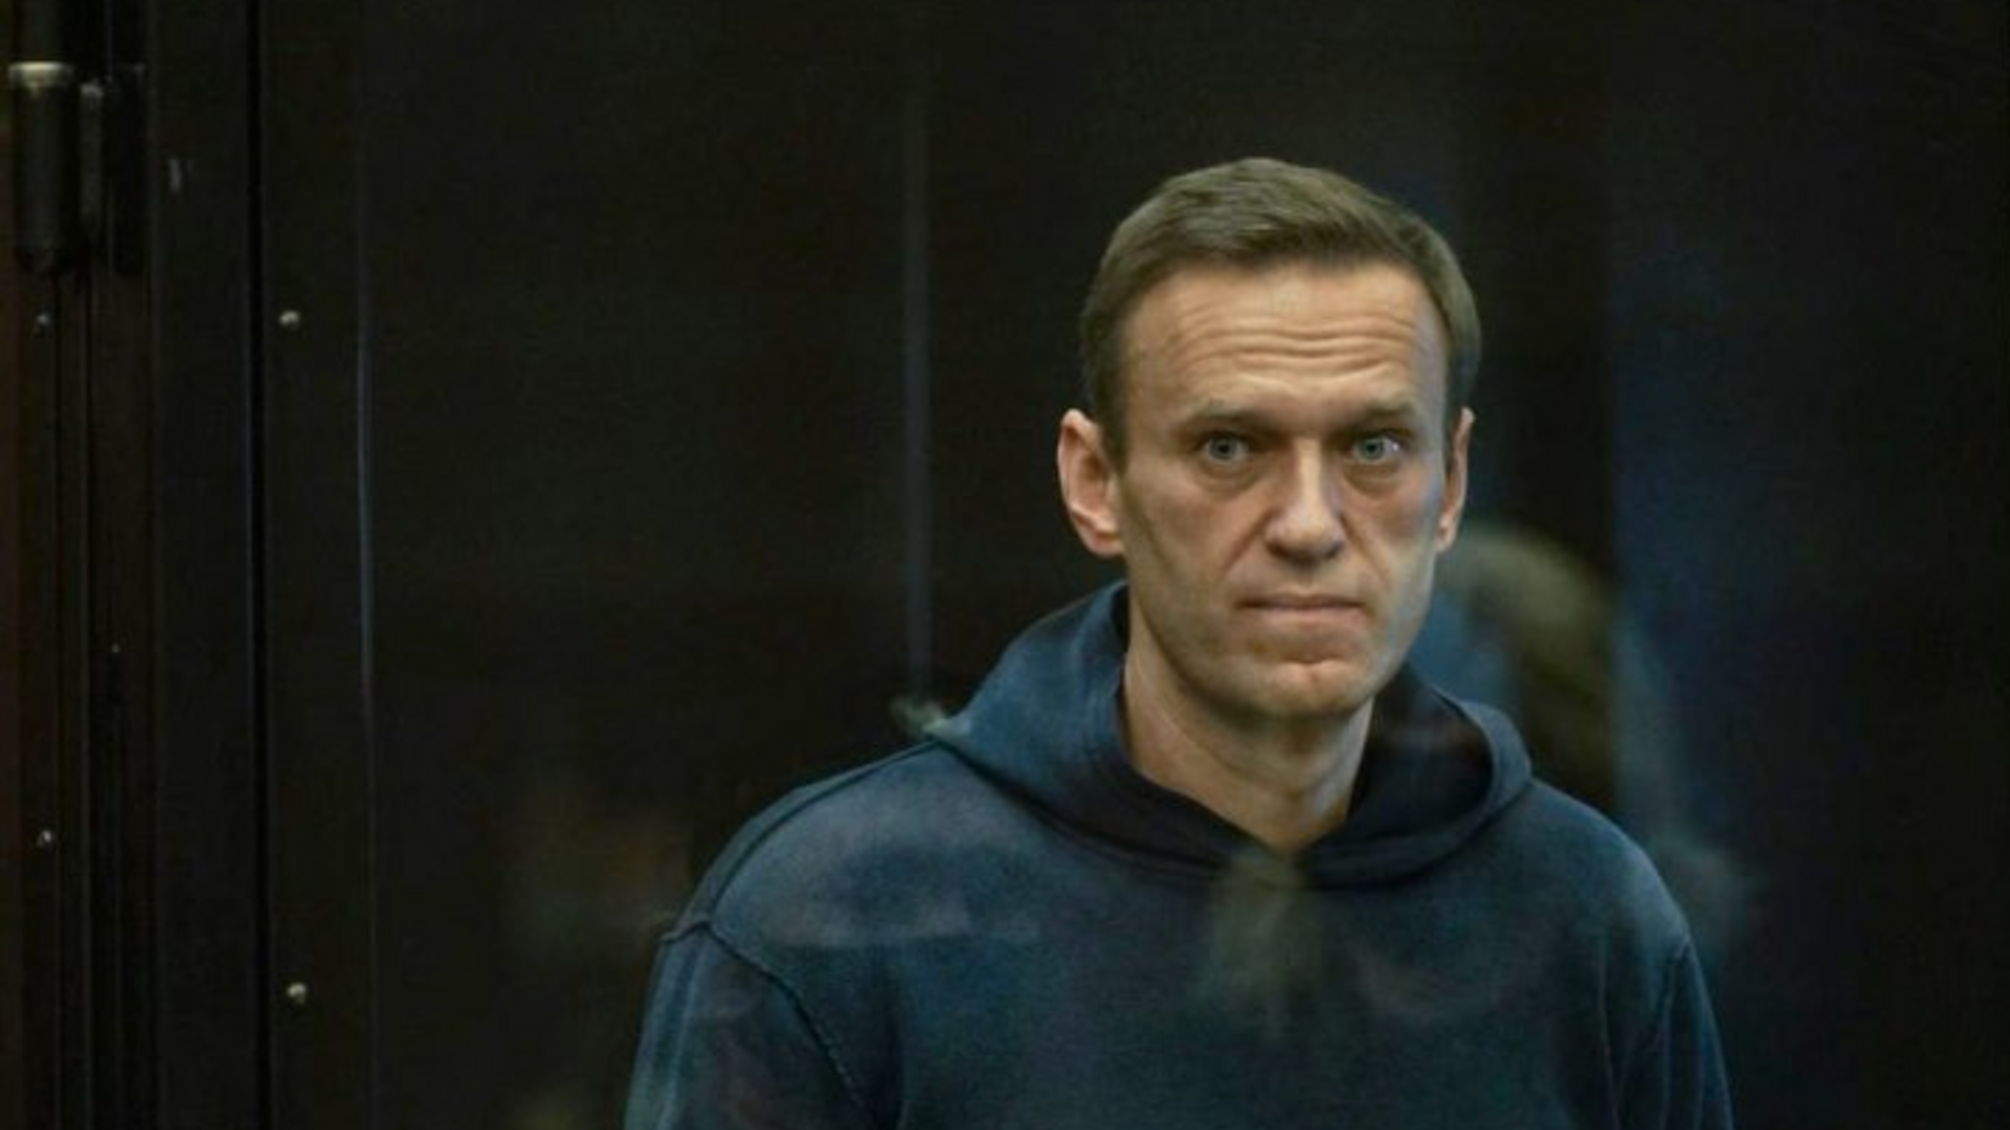  Путин наградил замдиректора ФСИН после смерти Навального в колонии  